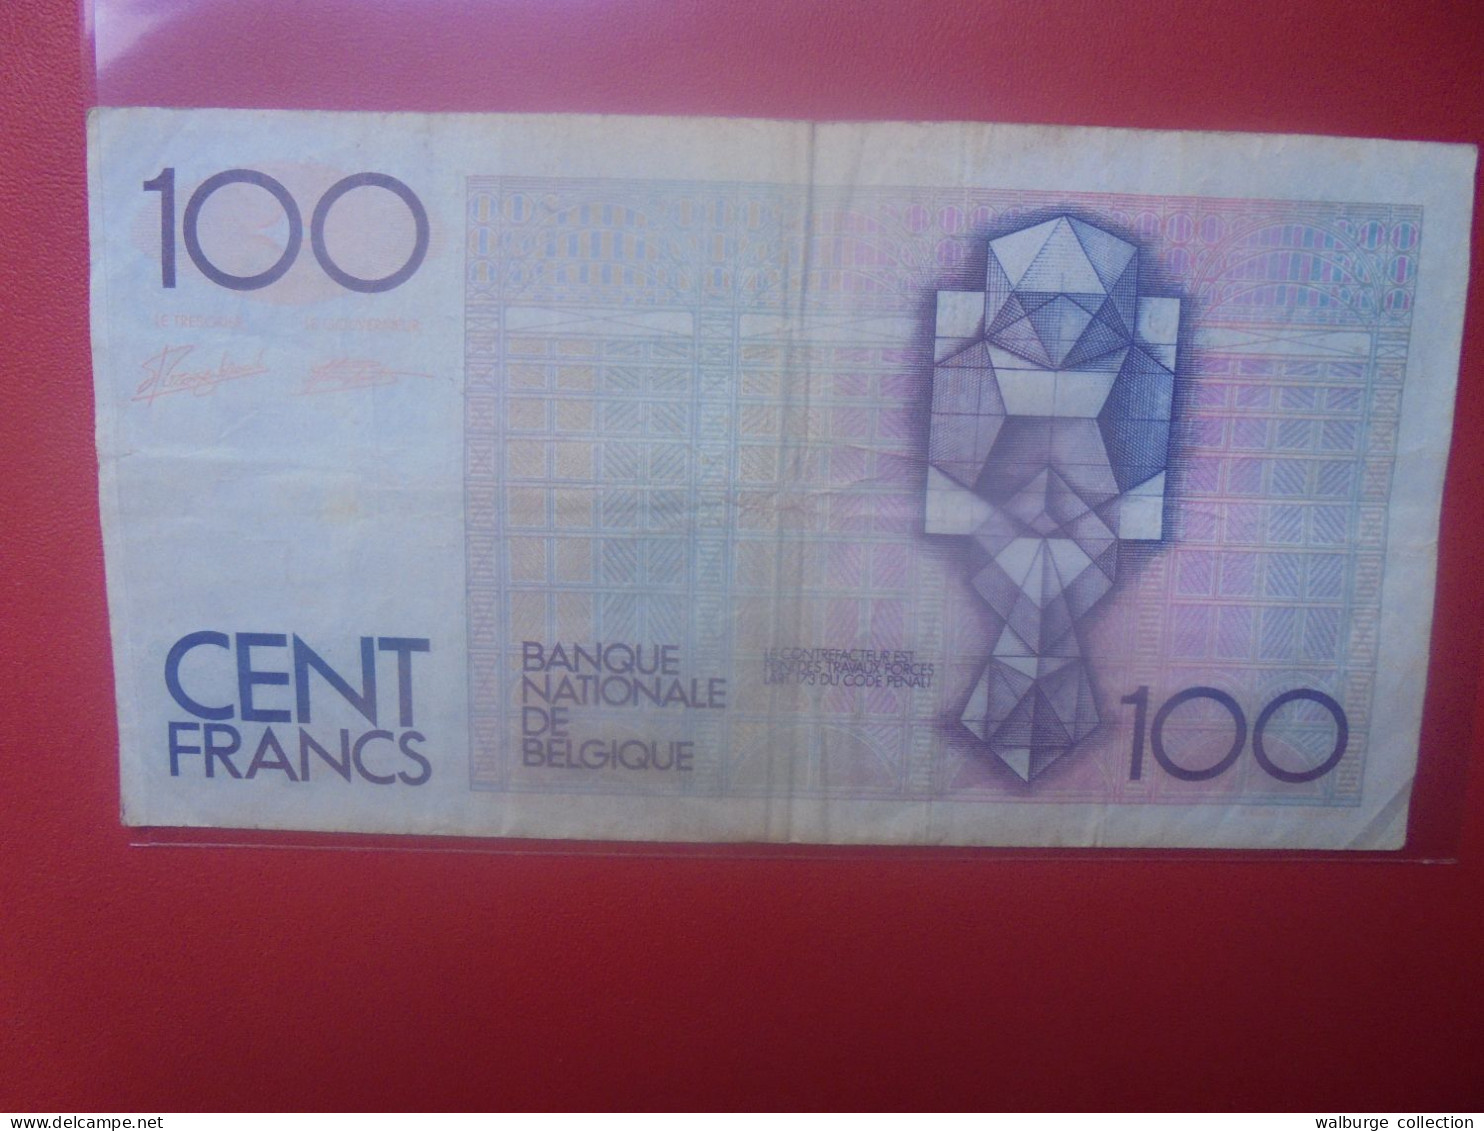 BELGIQUE 100 Francs 1982-94 Circuler (B.18) - 100 Frank